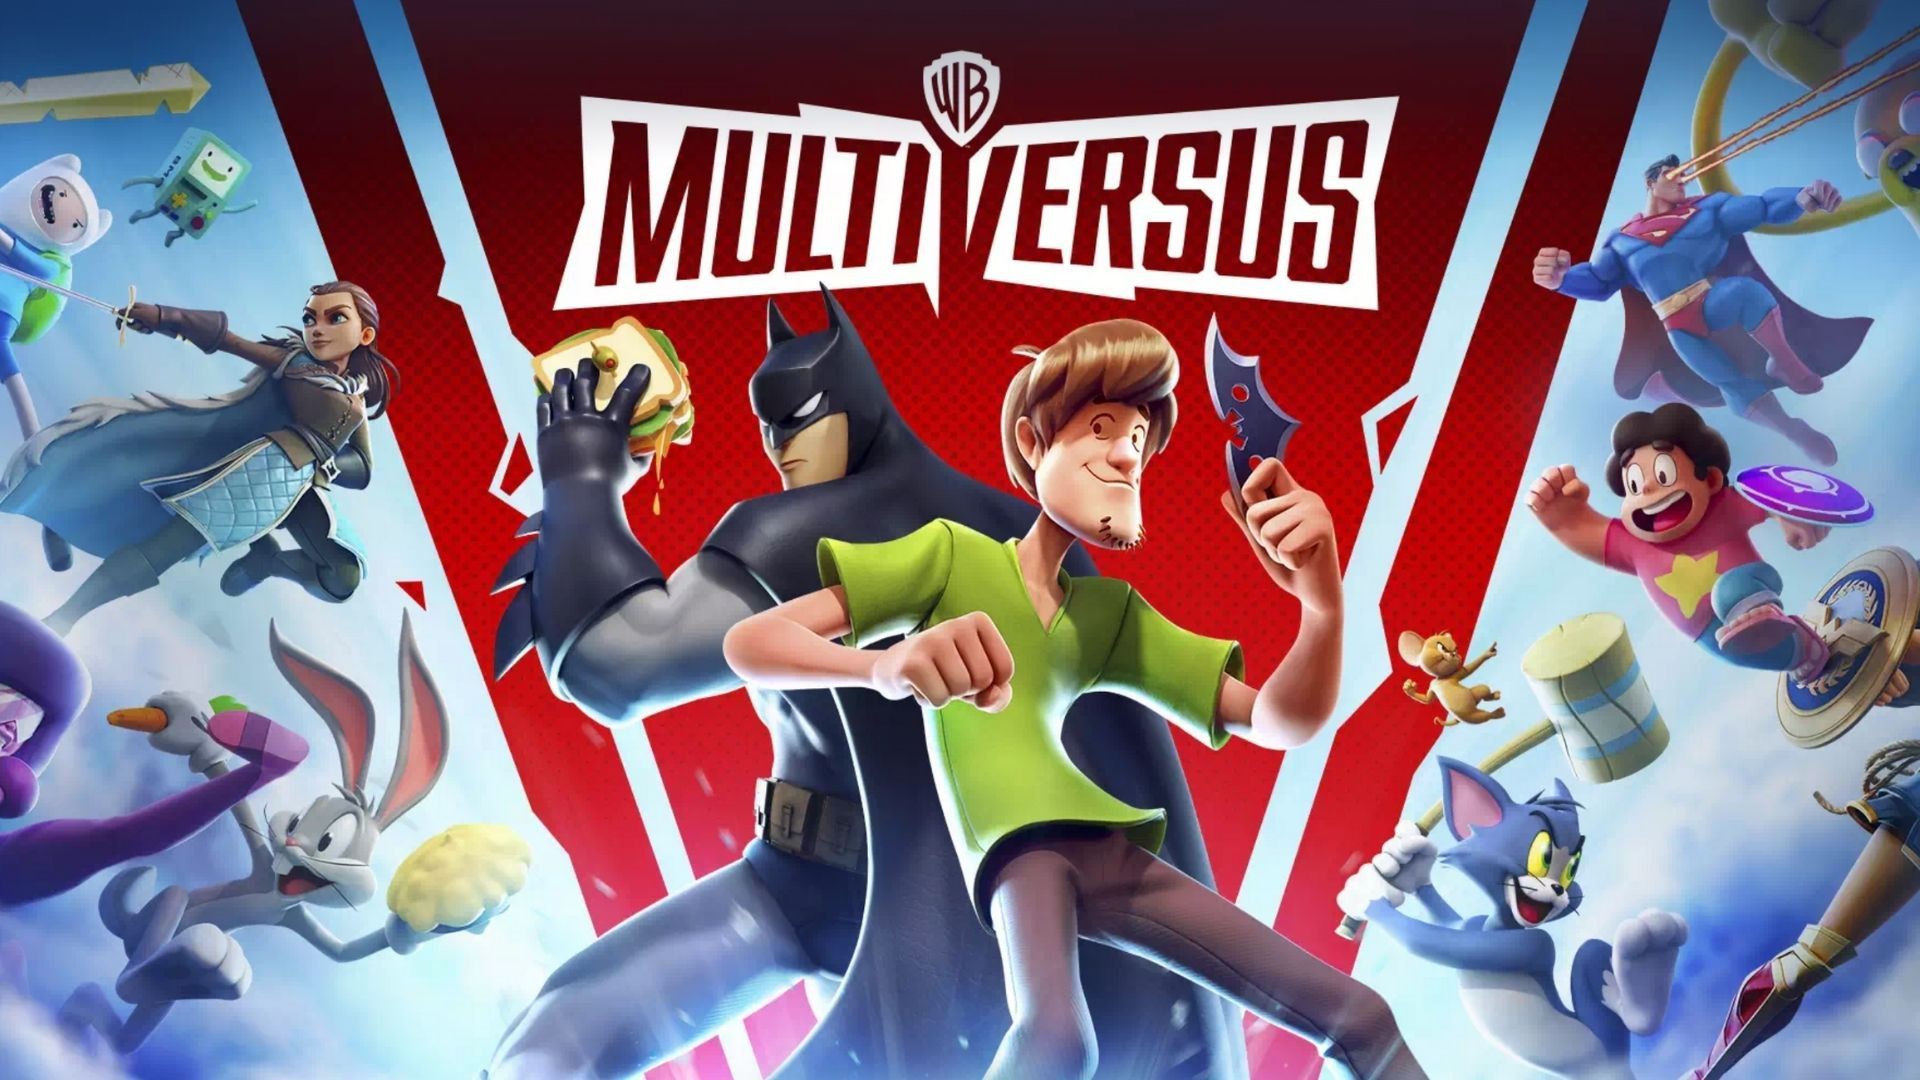 Steven Universo MultiVersus: Golpes, vantagens e como jogar com o